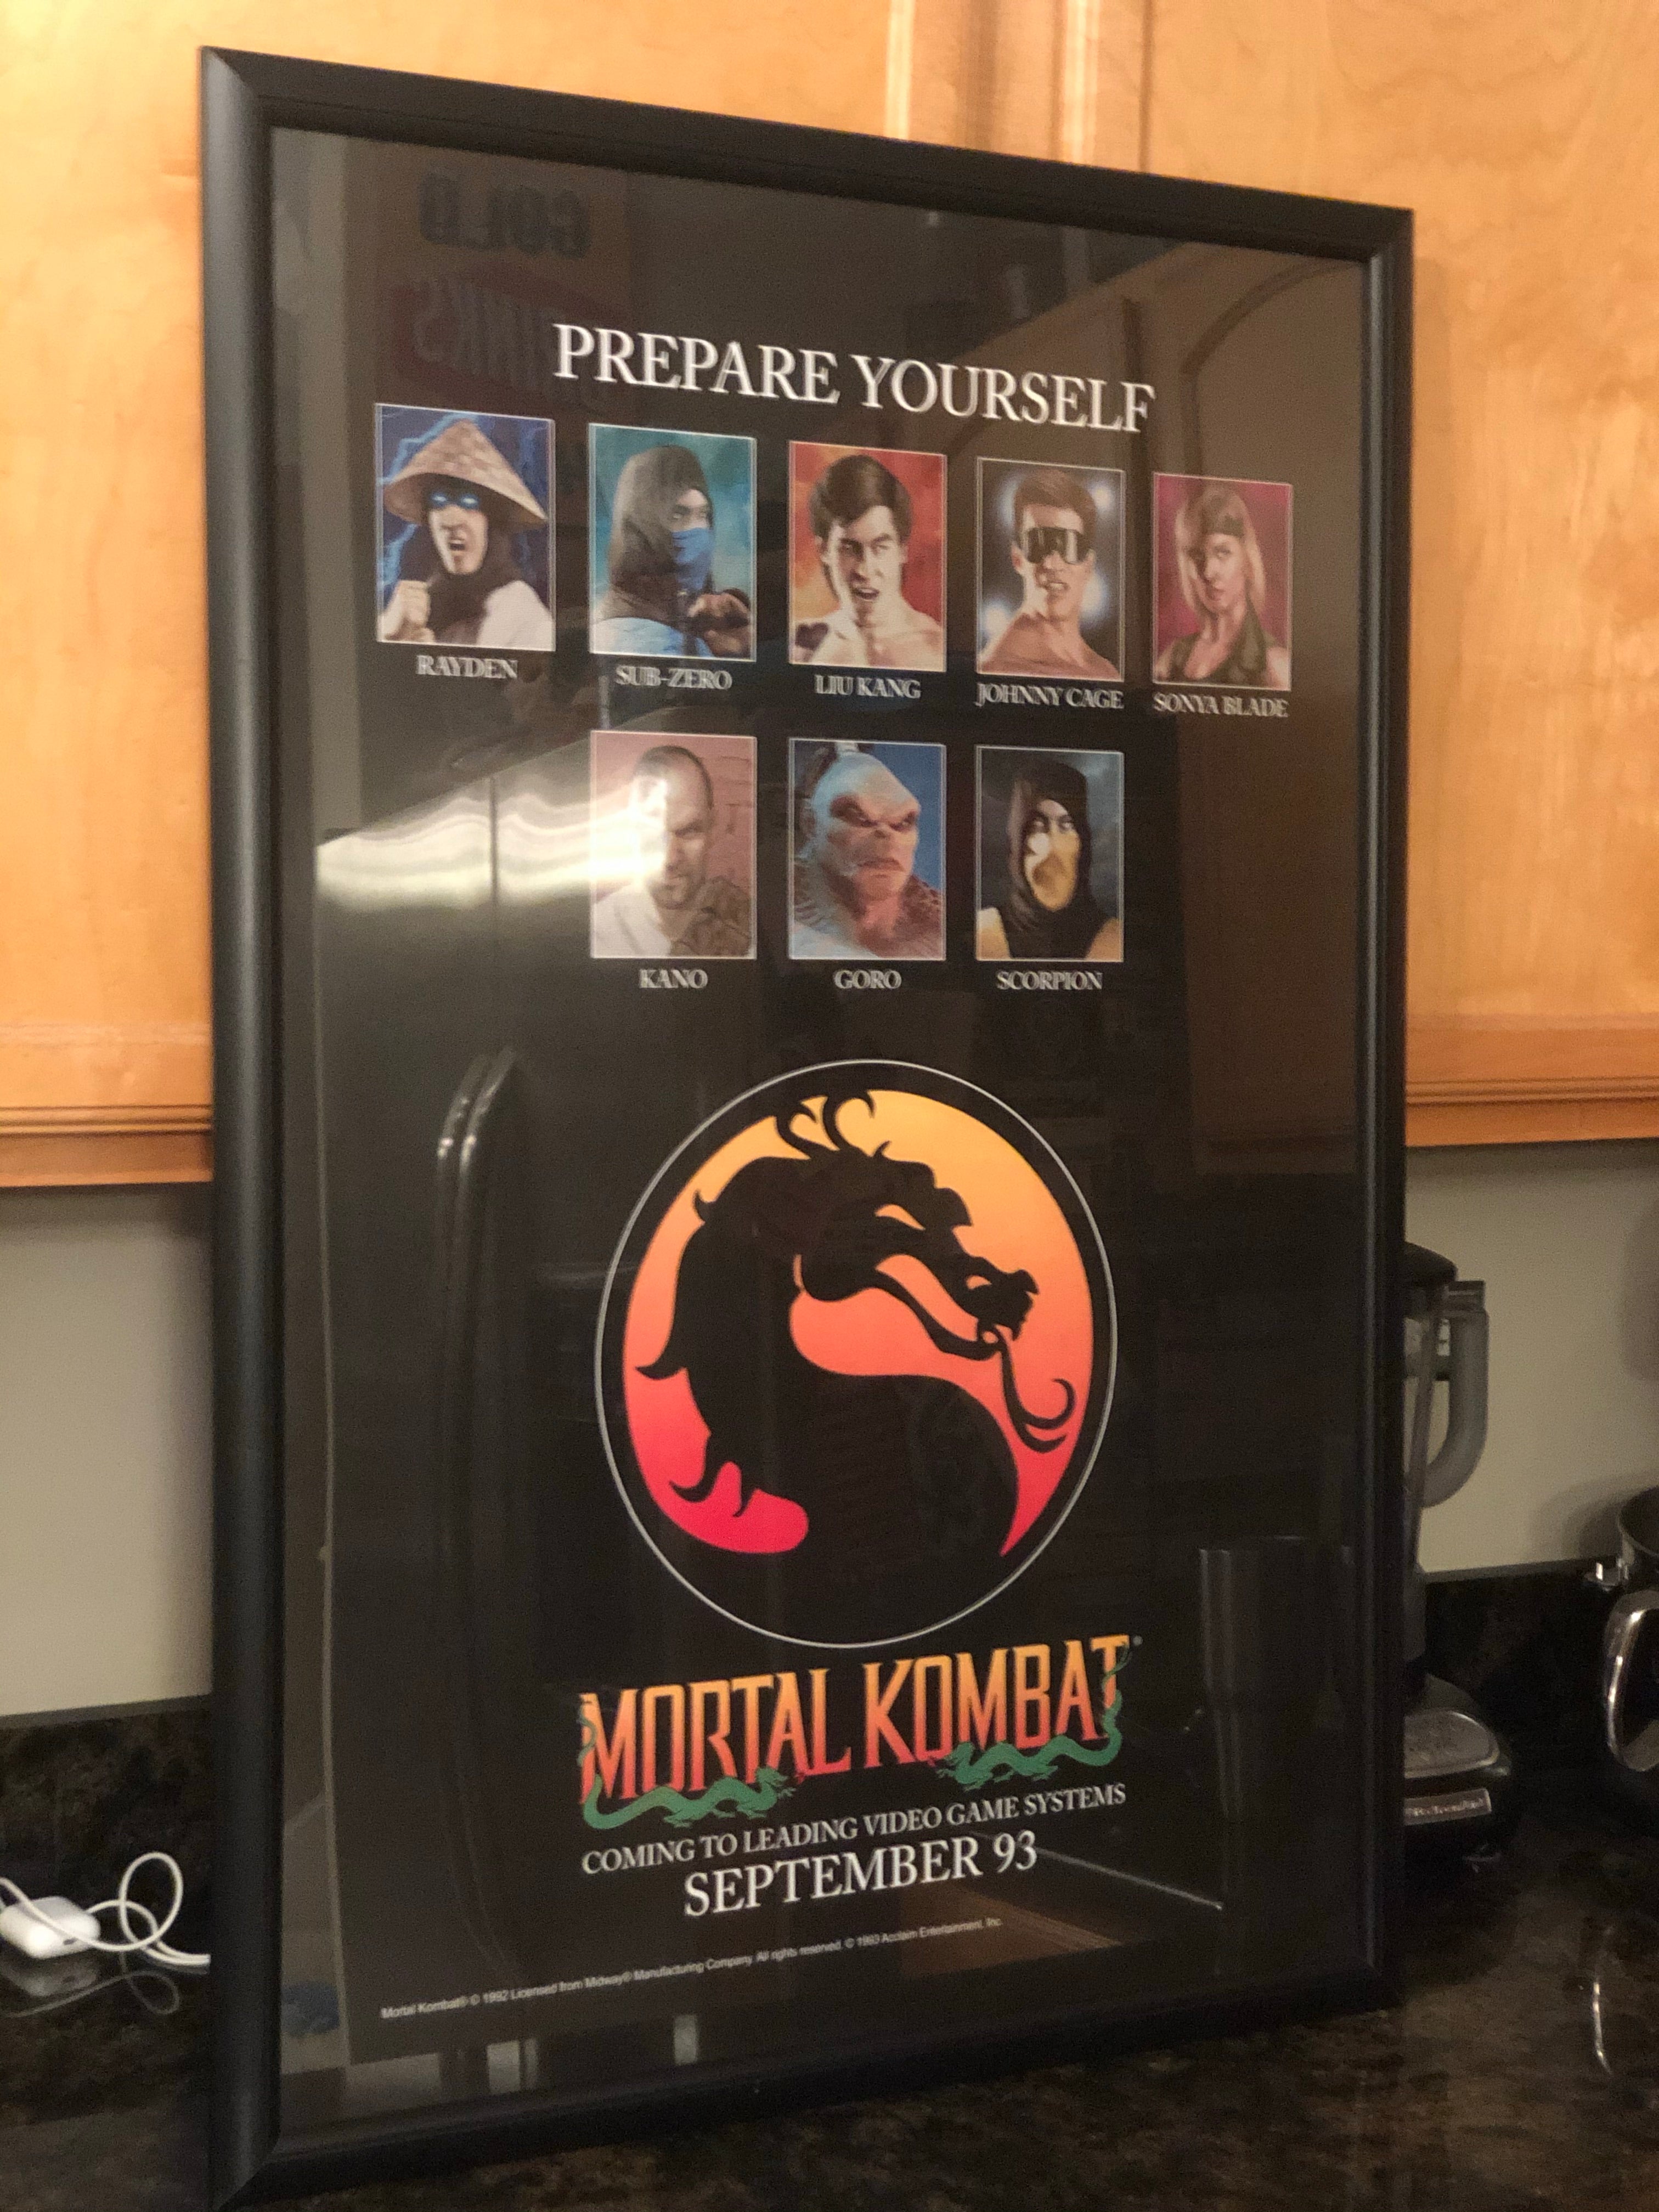 Affiche publicitaire du magazine de jeux vidéo Mortal Kombat